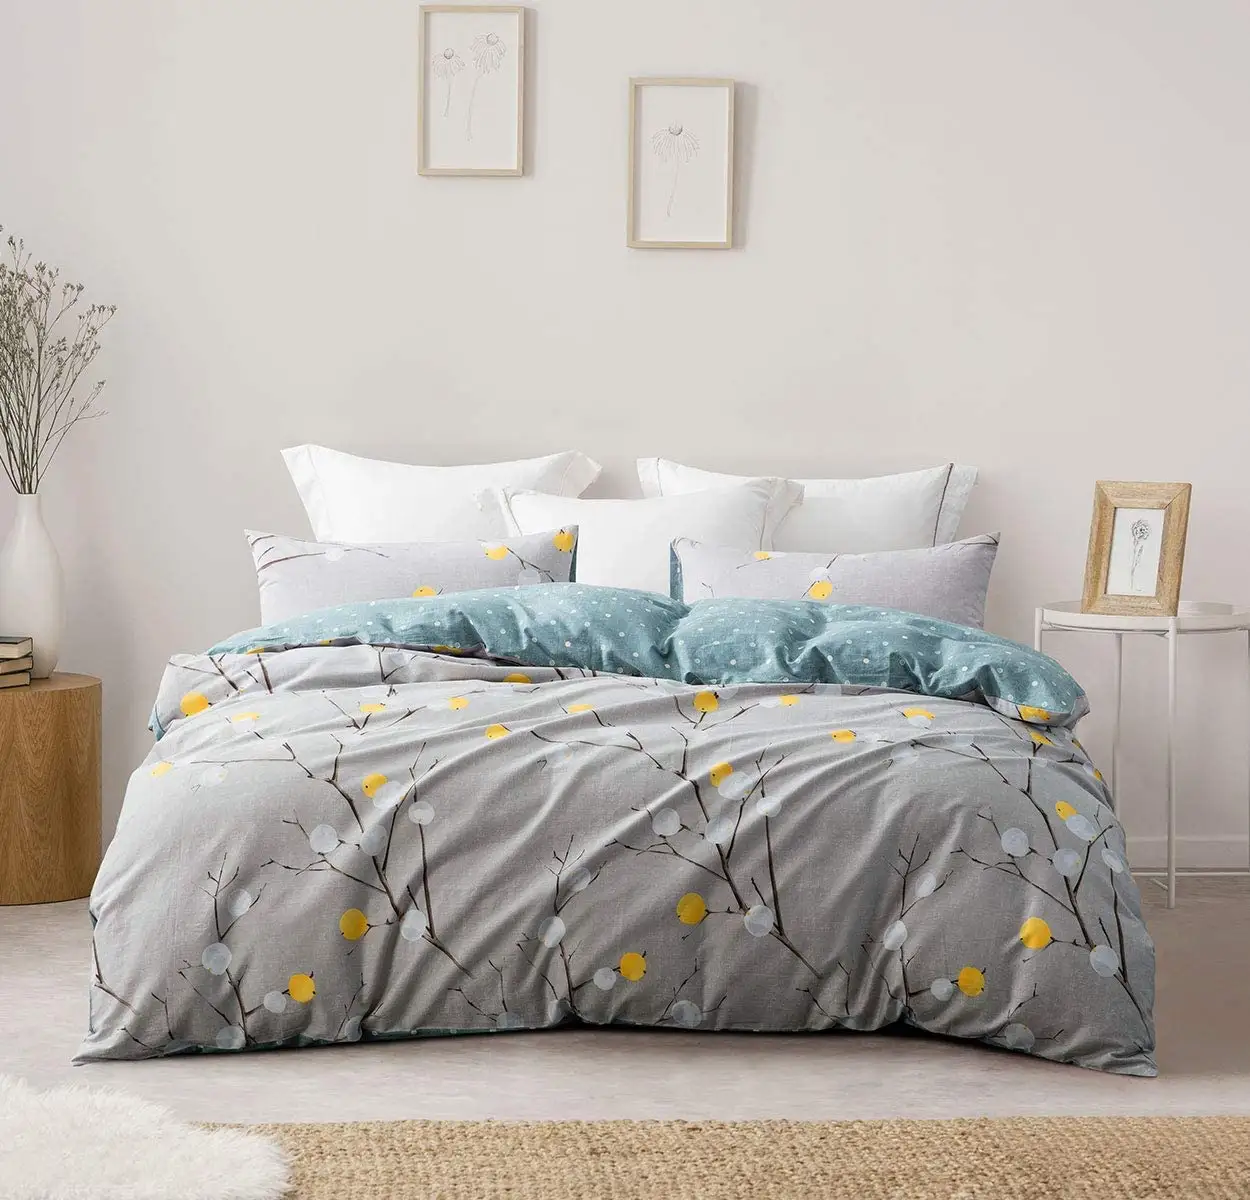 Çiçek ve polka nokta desenli yastık kılıfı dikişli sıkıca yatak yorgan kapak nevresim takımı